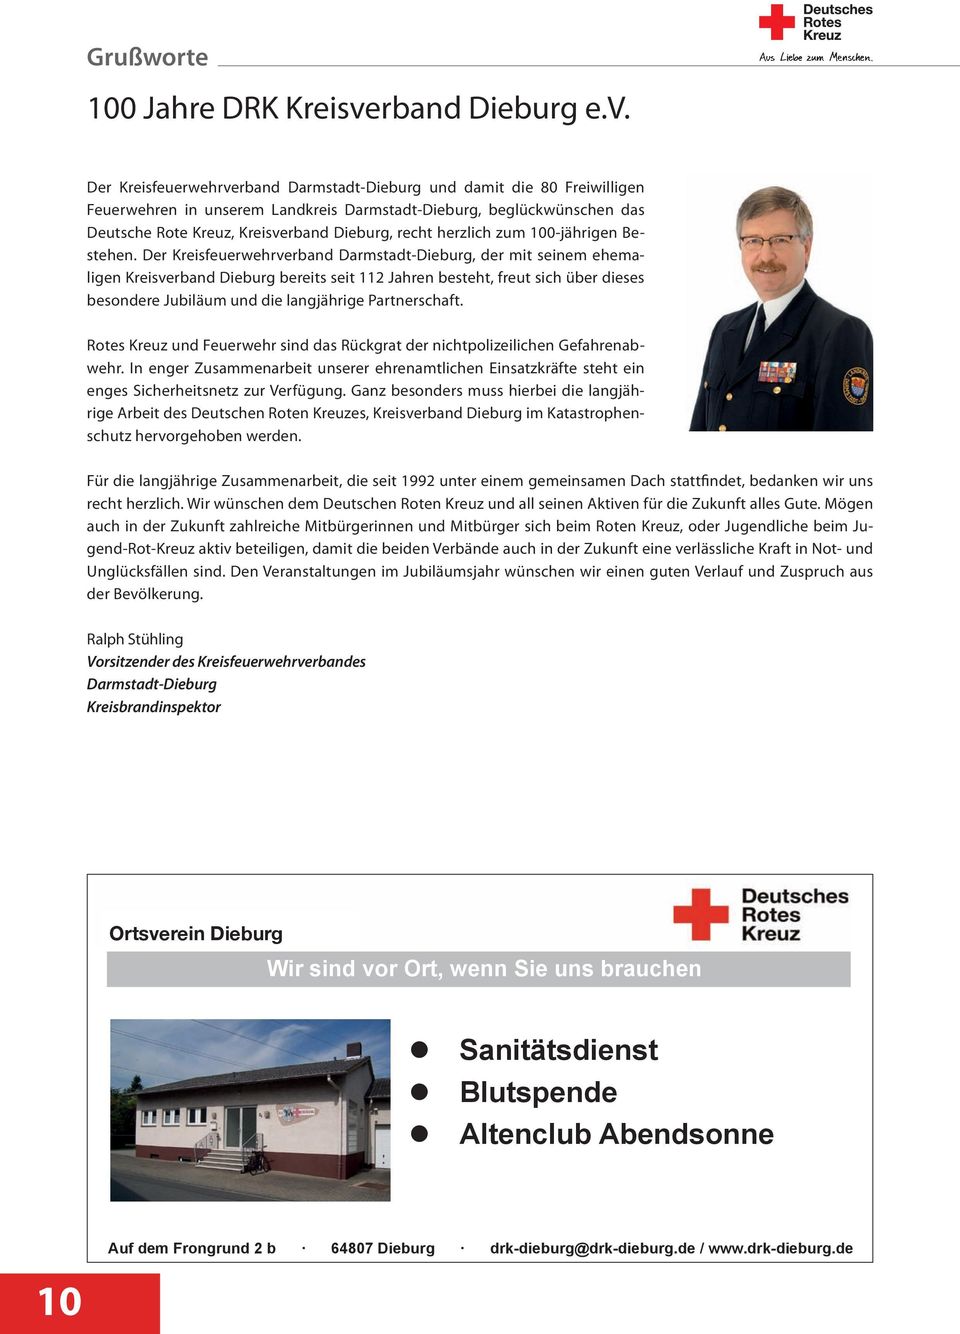 Der Kreisfeuerwehrverband Darmstadt-Dieburg und damit die 80 Freiwilligen Feuerwehren in unserem Landkreis Darmstadt-Dieburg, beglückwünschen das Deutsche Rote Kreuz, Kreisverband Dieburg, recht